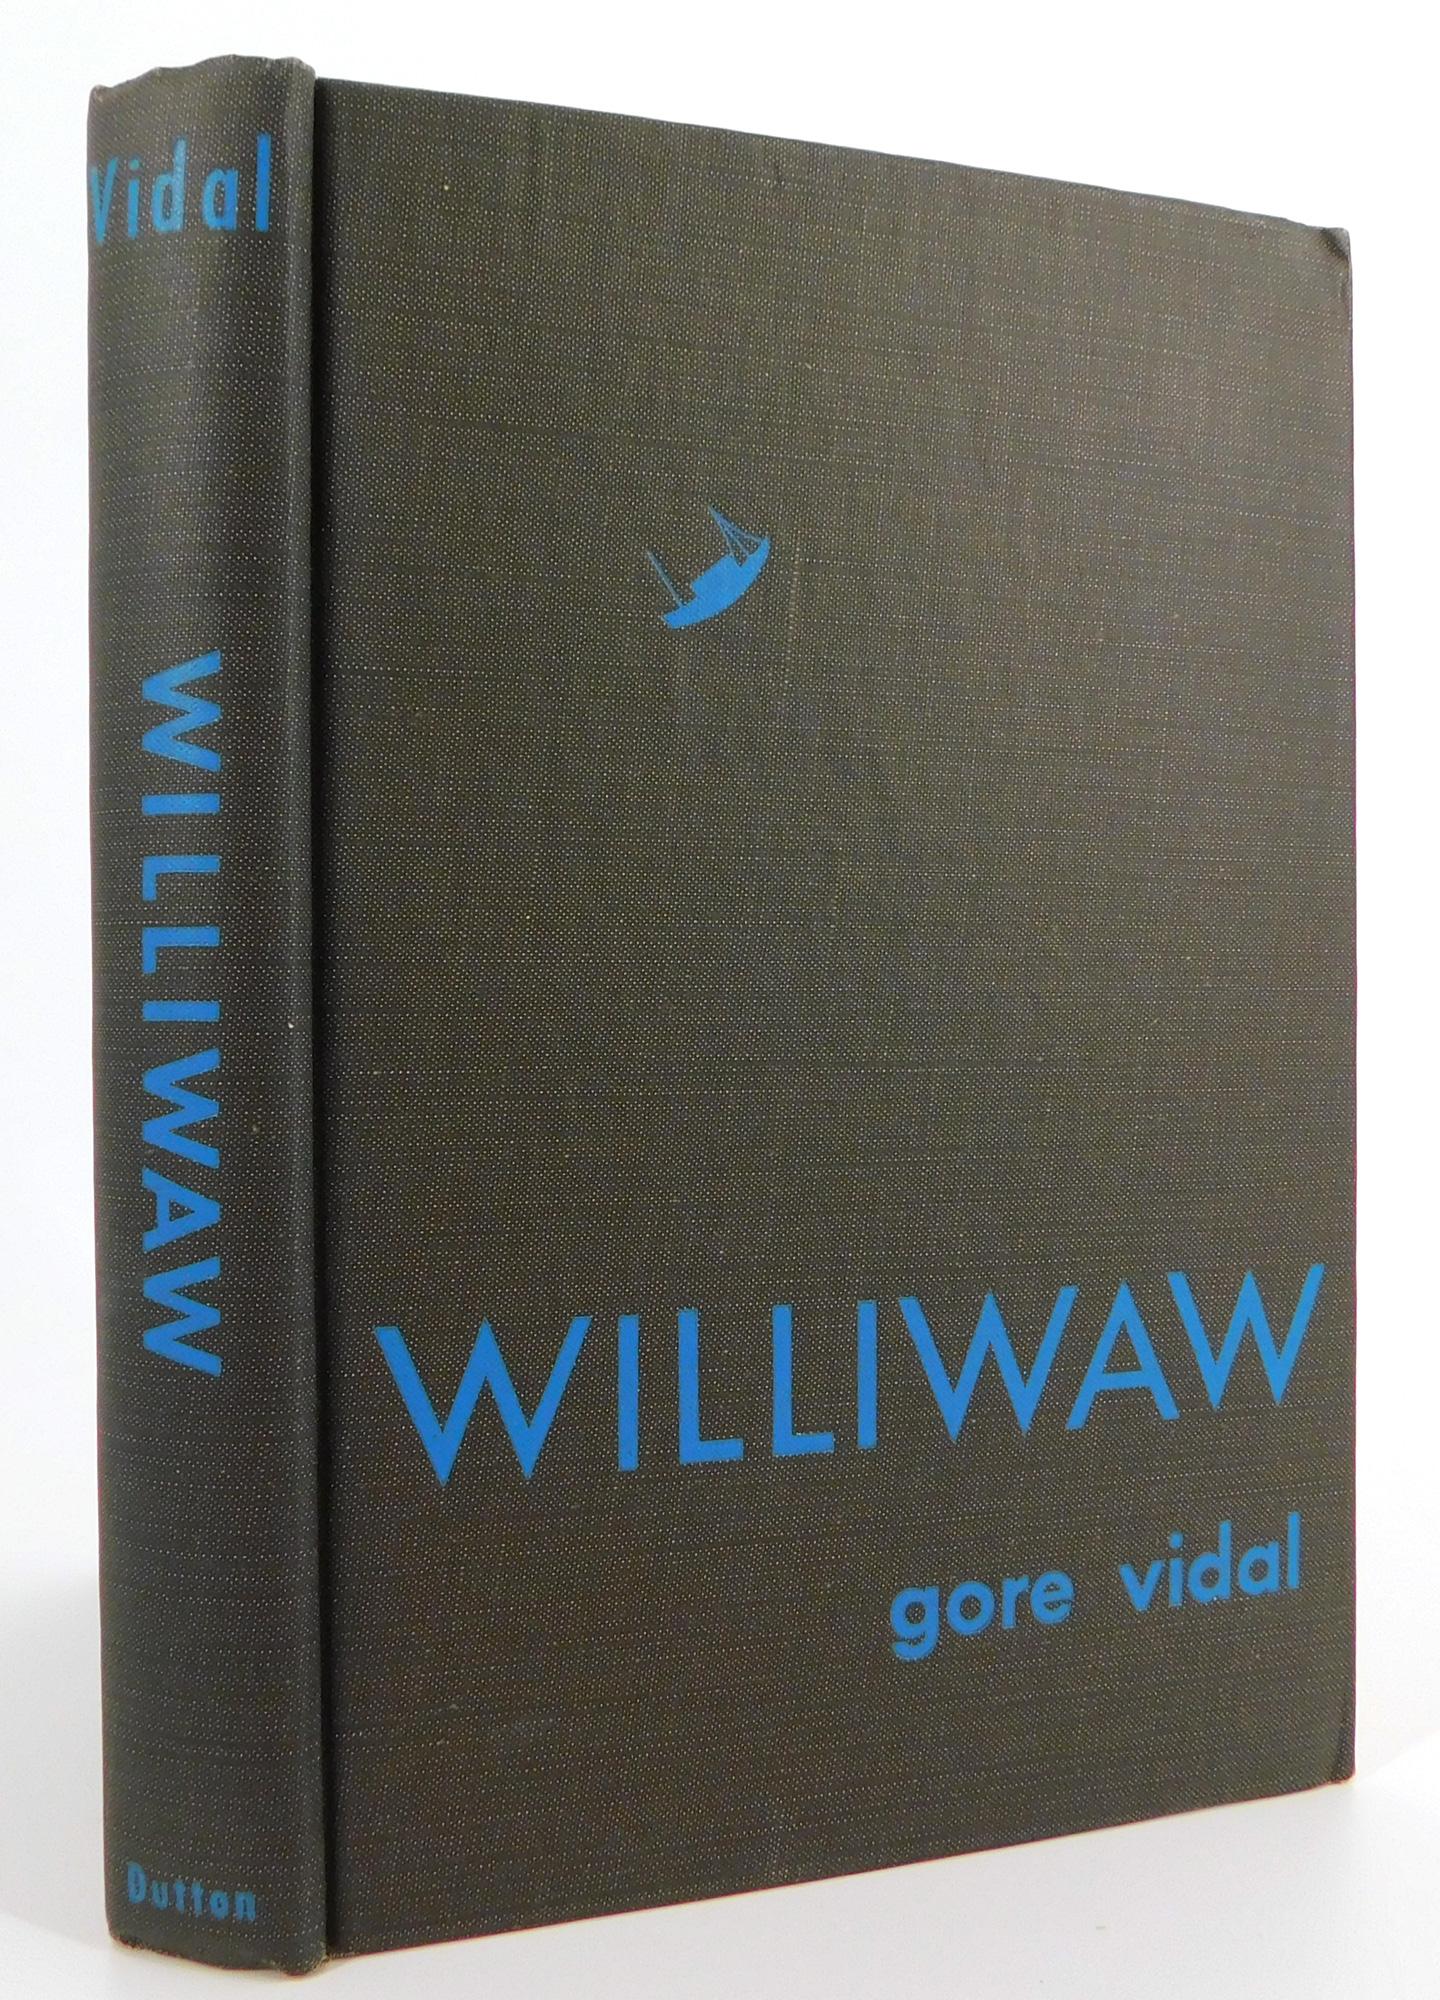 Paper Gore Vidal's First Novel 